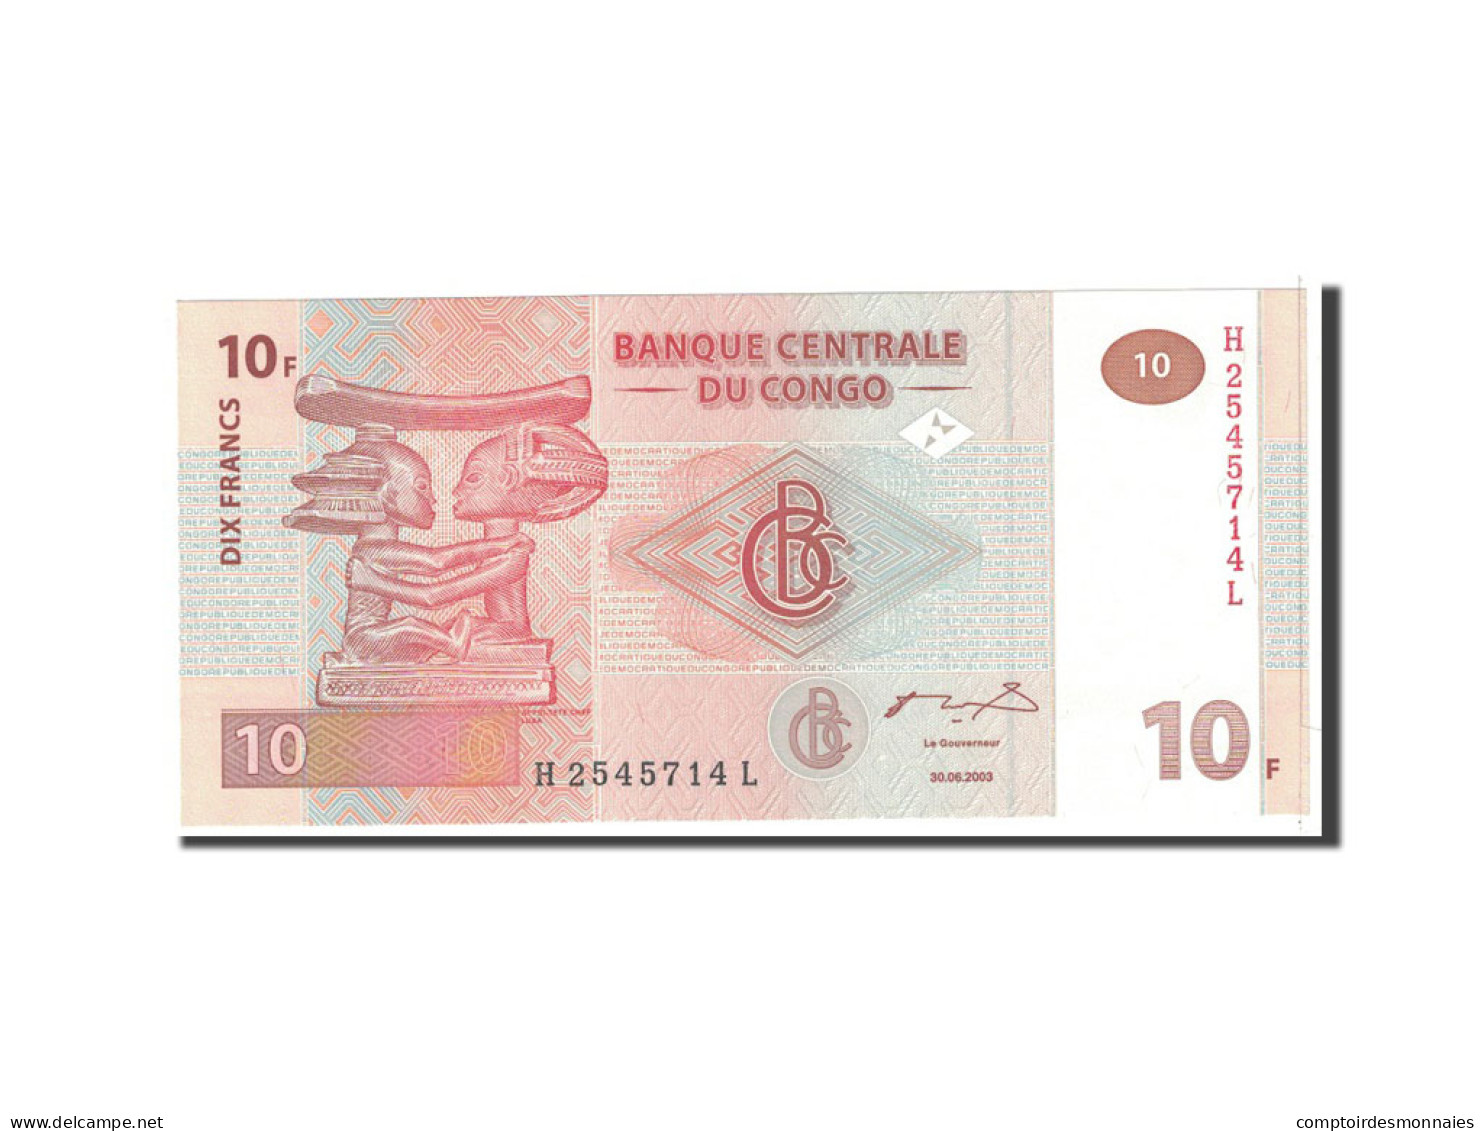 Billet, Congo Democratic Republic, 10 Francs, 2003, 2003-06-30, KM:93a, NEUF - Repubblica Del Congo (Congo-Brazzaville)